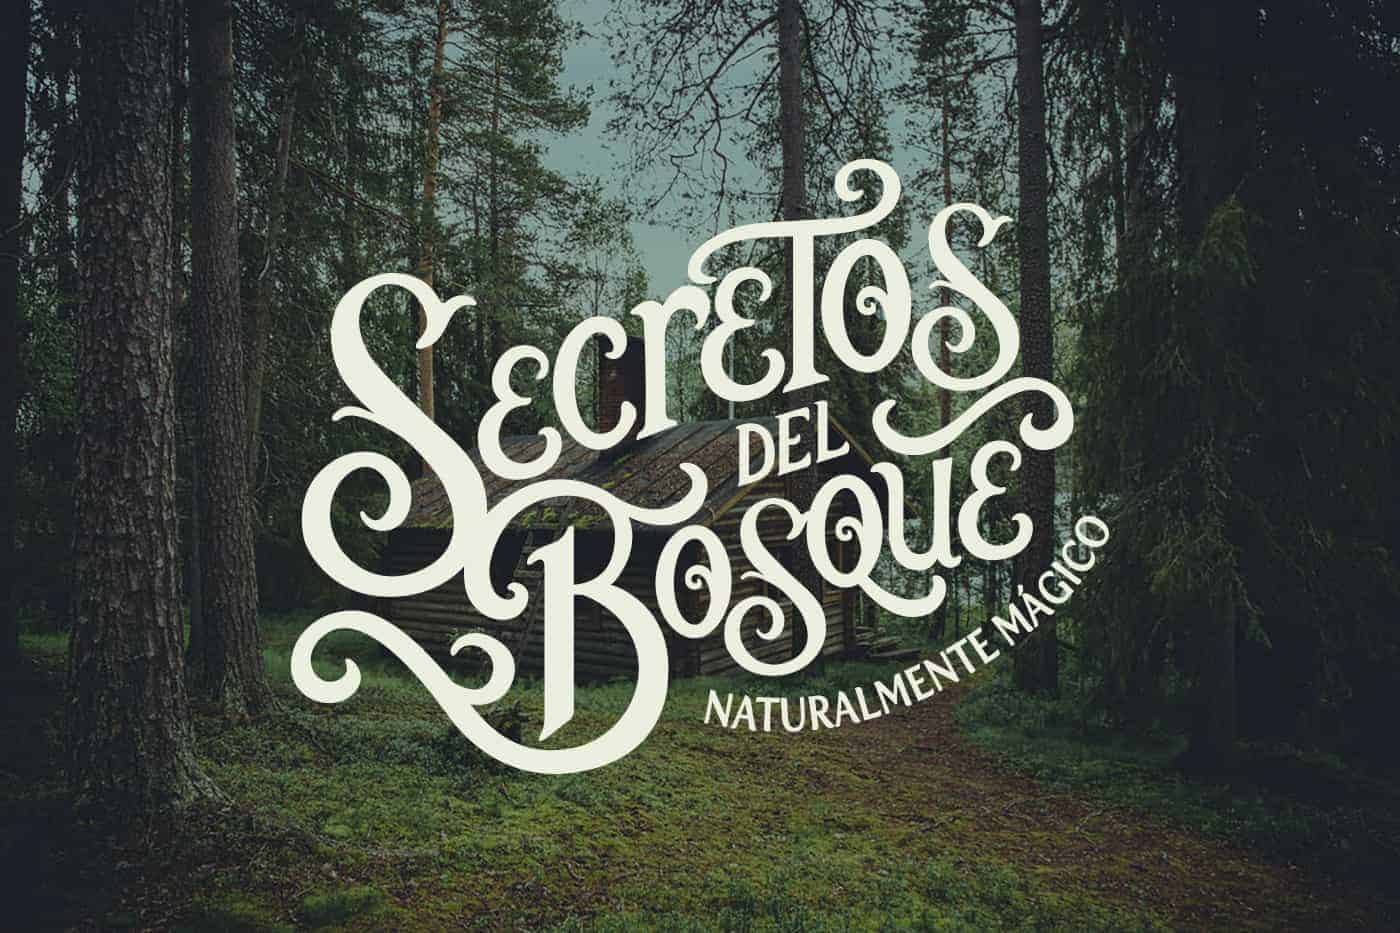 Secretos del Bosque | Pastry and coffee shop